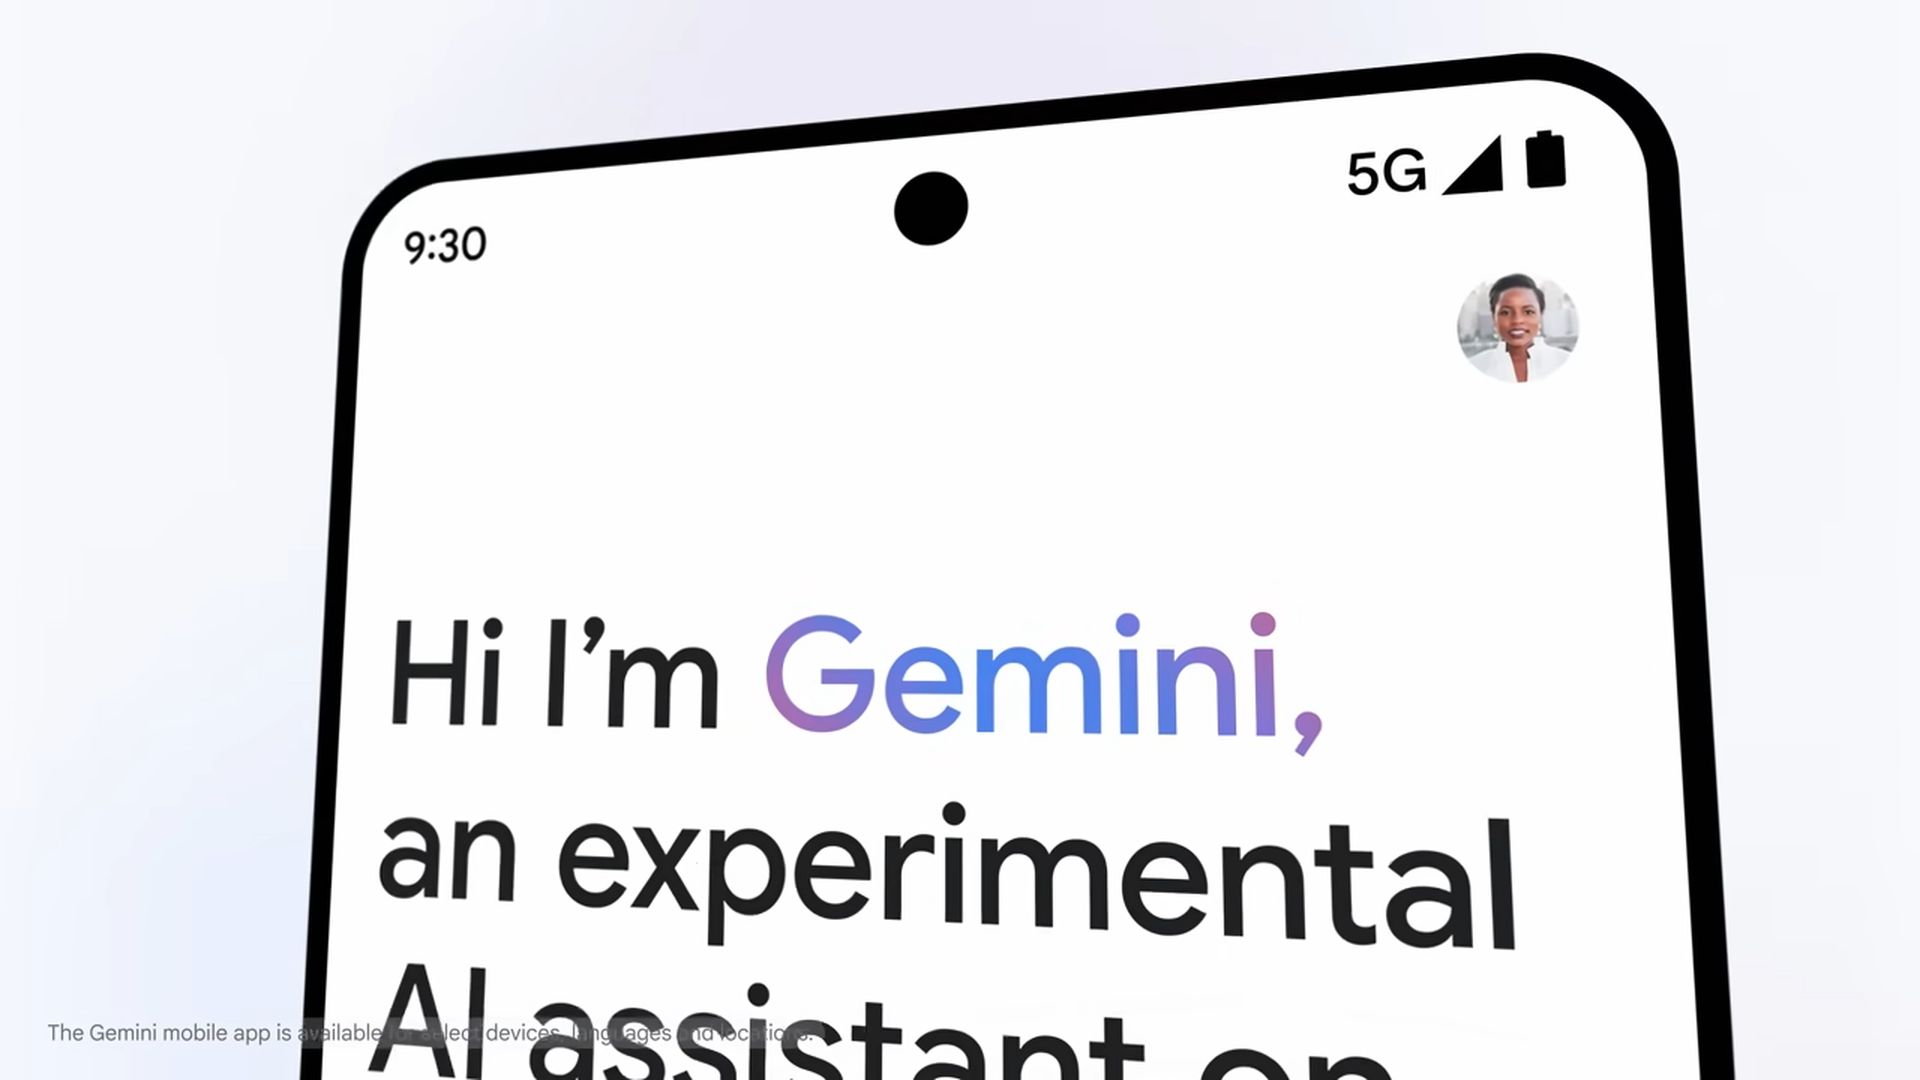 Gemini 的 Android 版本将获得实时响应功能